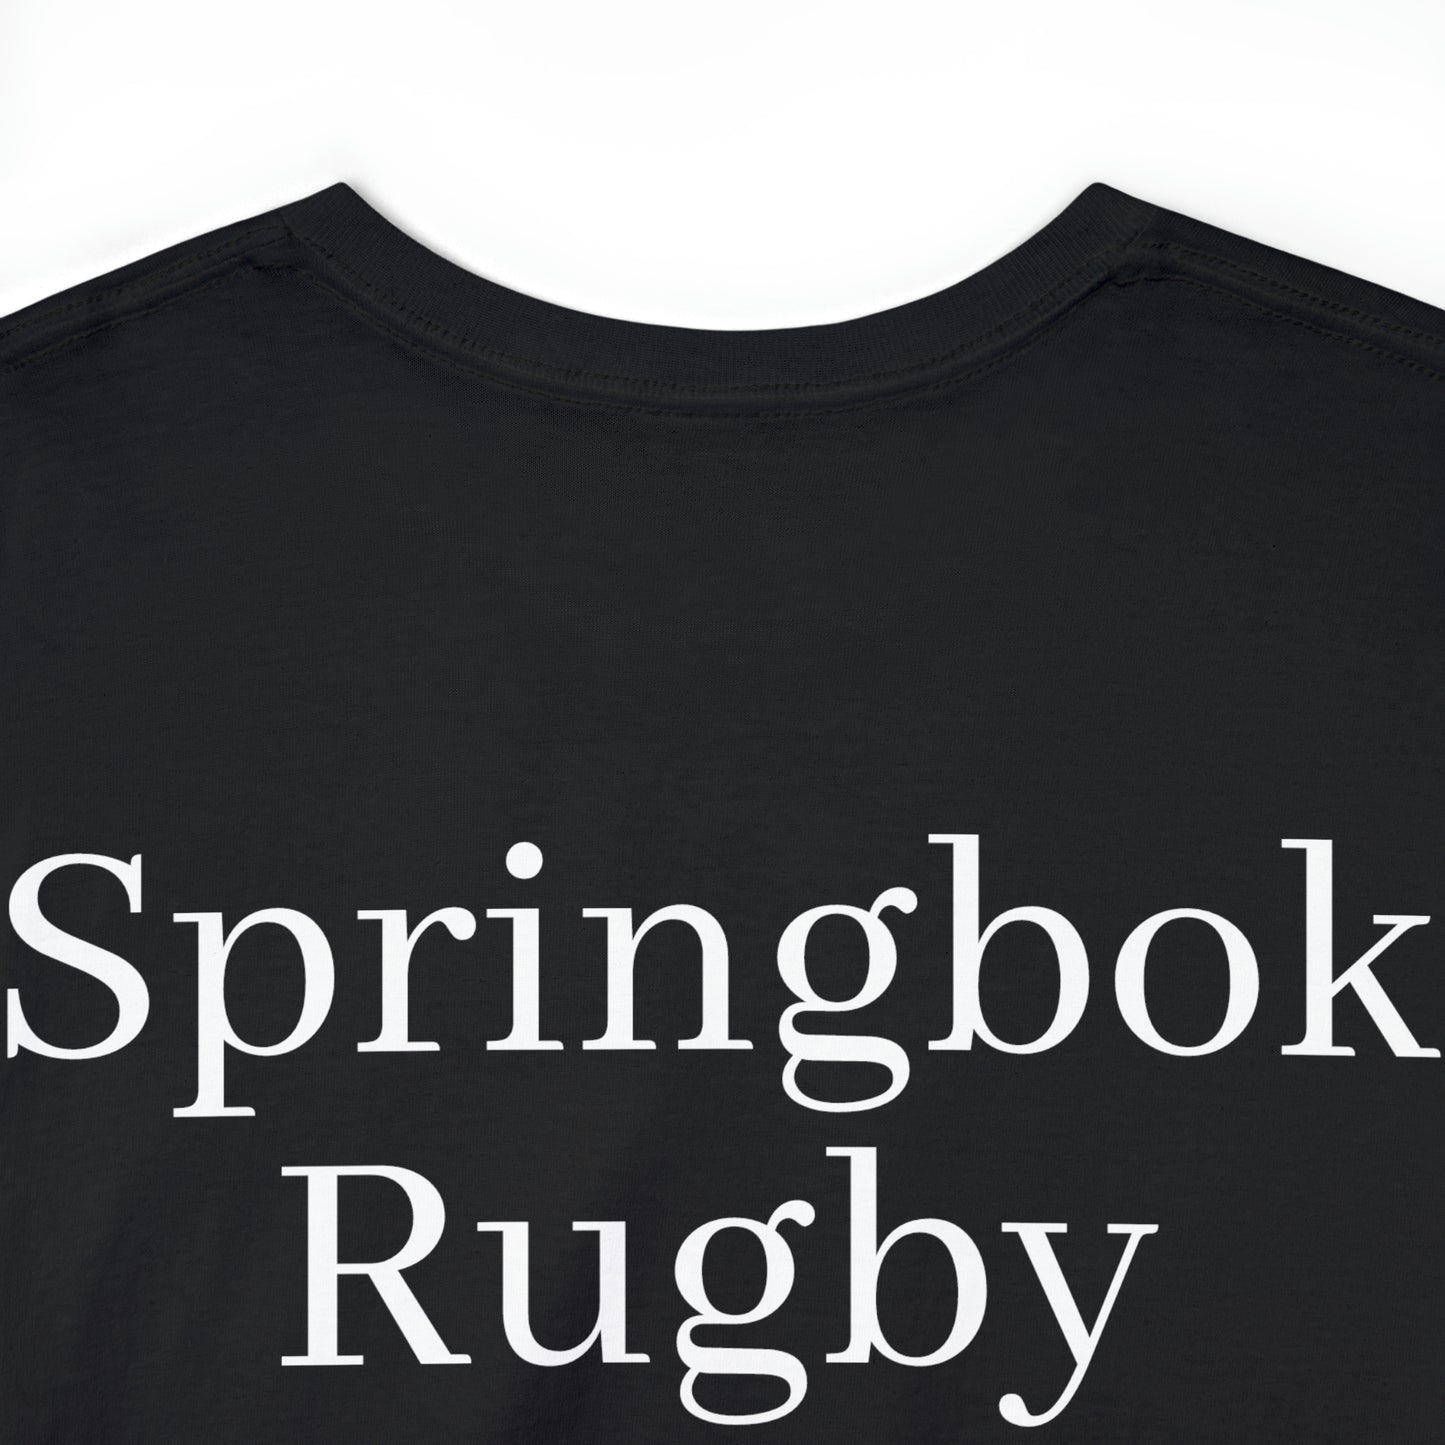 Springboks Celebrating - dark shirts